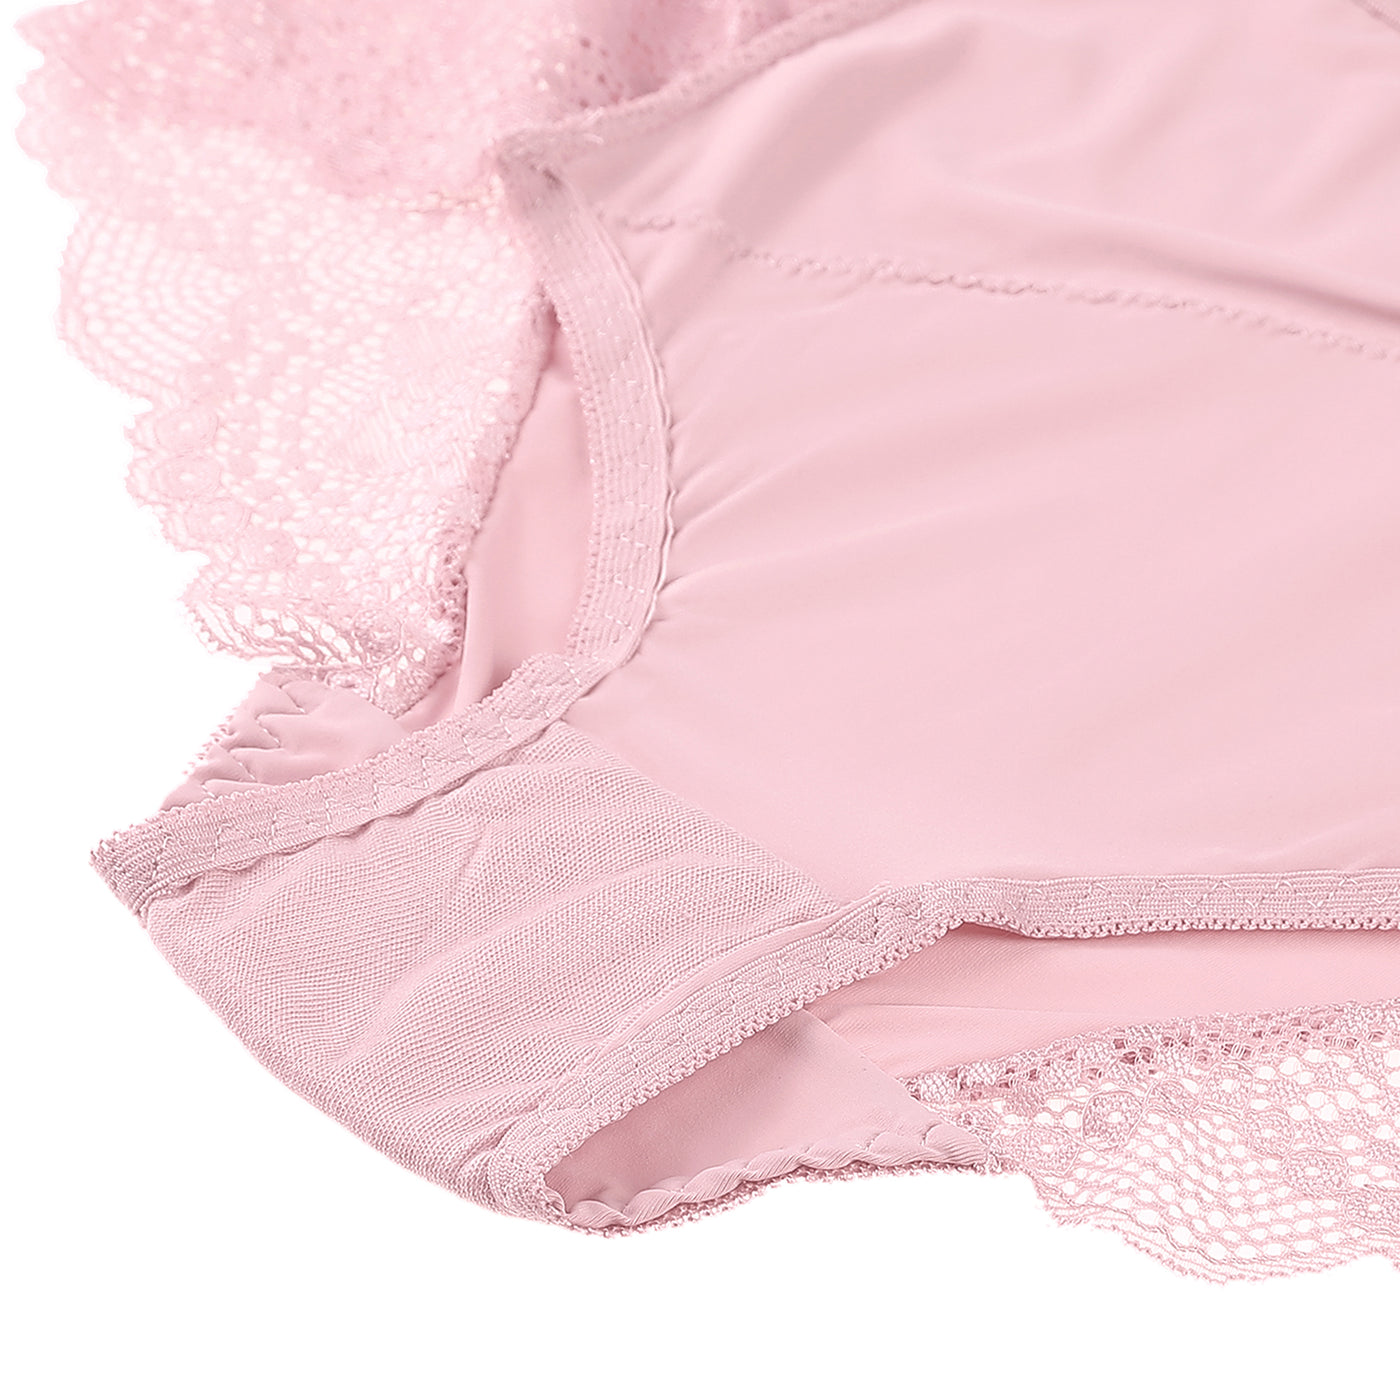 Bublédon Women's Plus Size Briefs High Waist Breathable Stretch Lace Panties